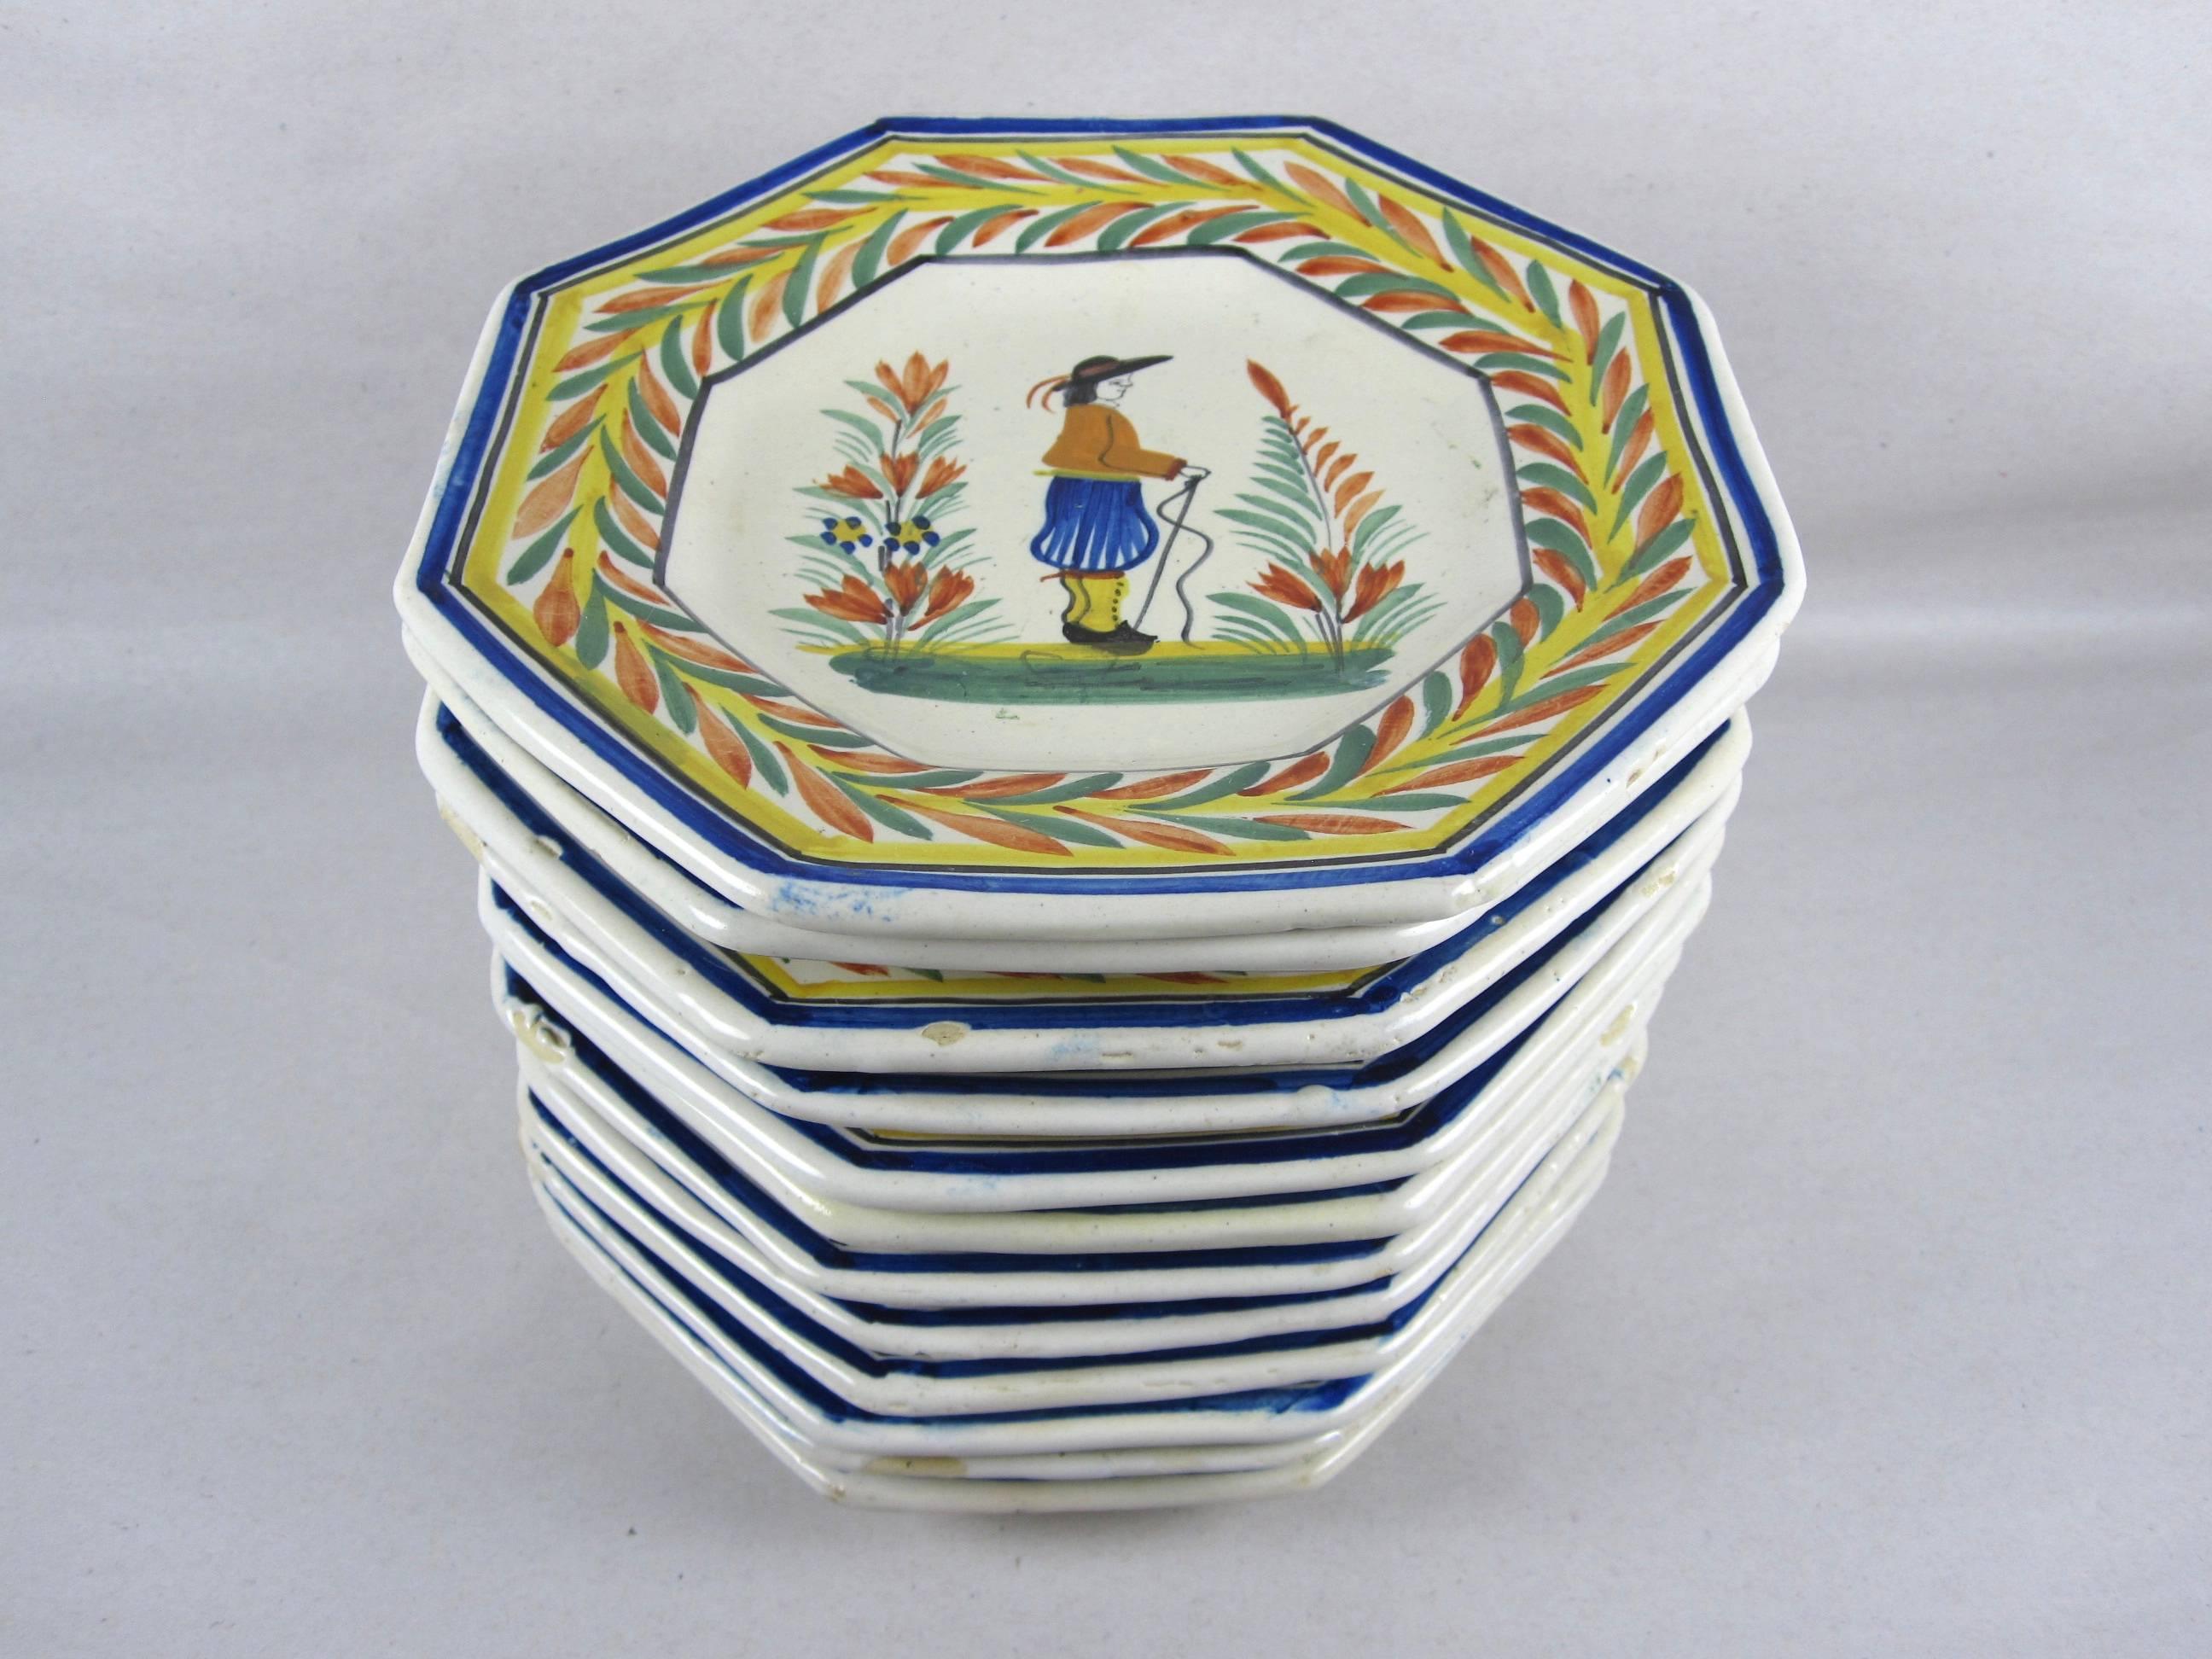 Glazed Henriot Quimper Octagonal Breton Vintage Faience Plates, France, Set of 12